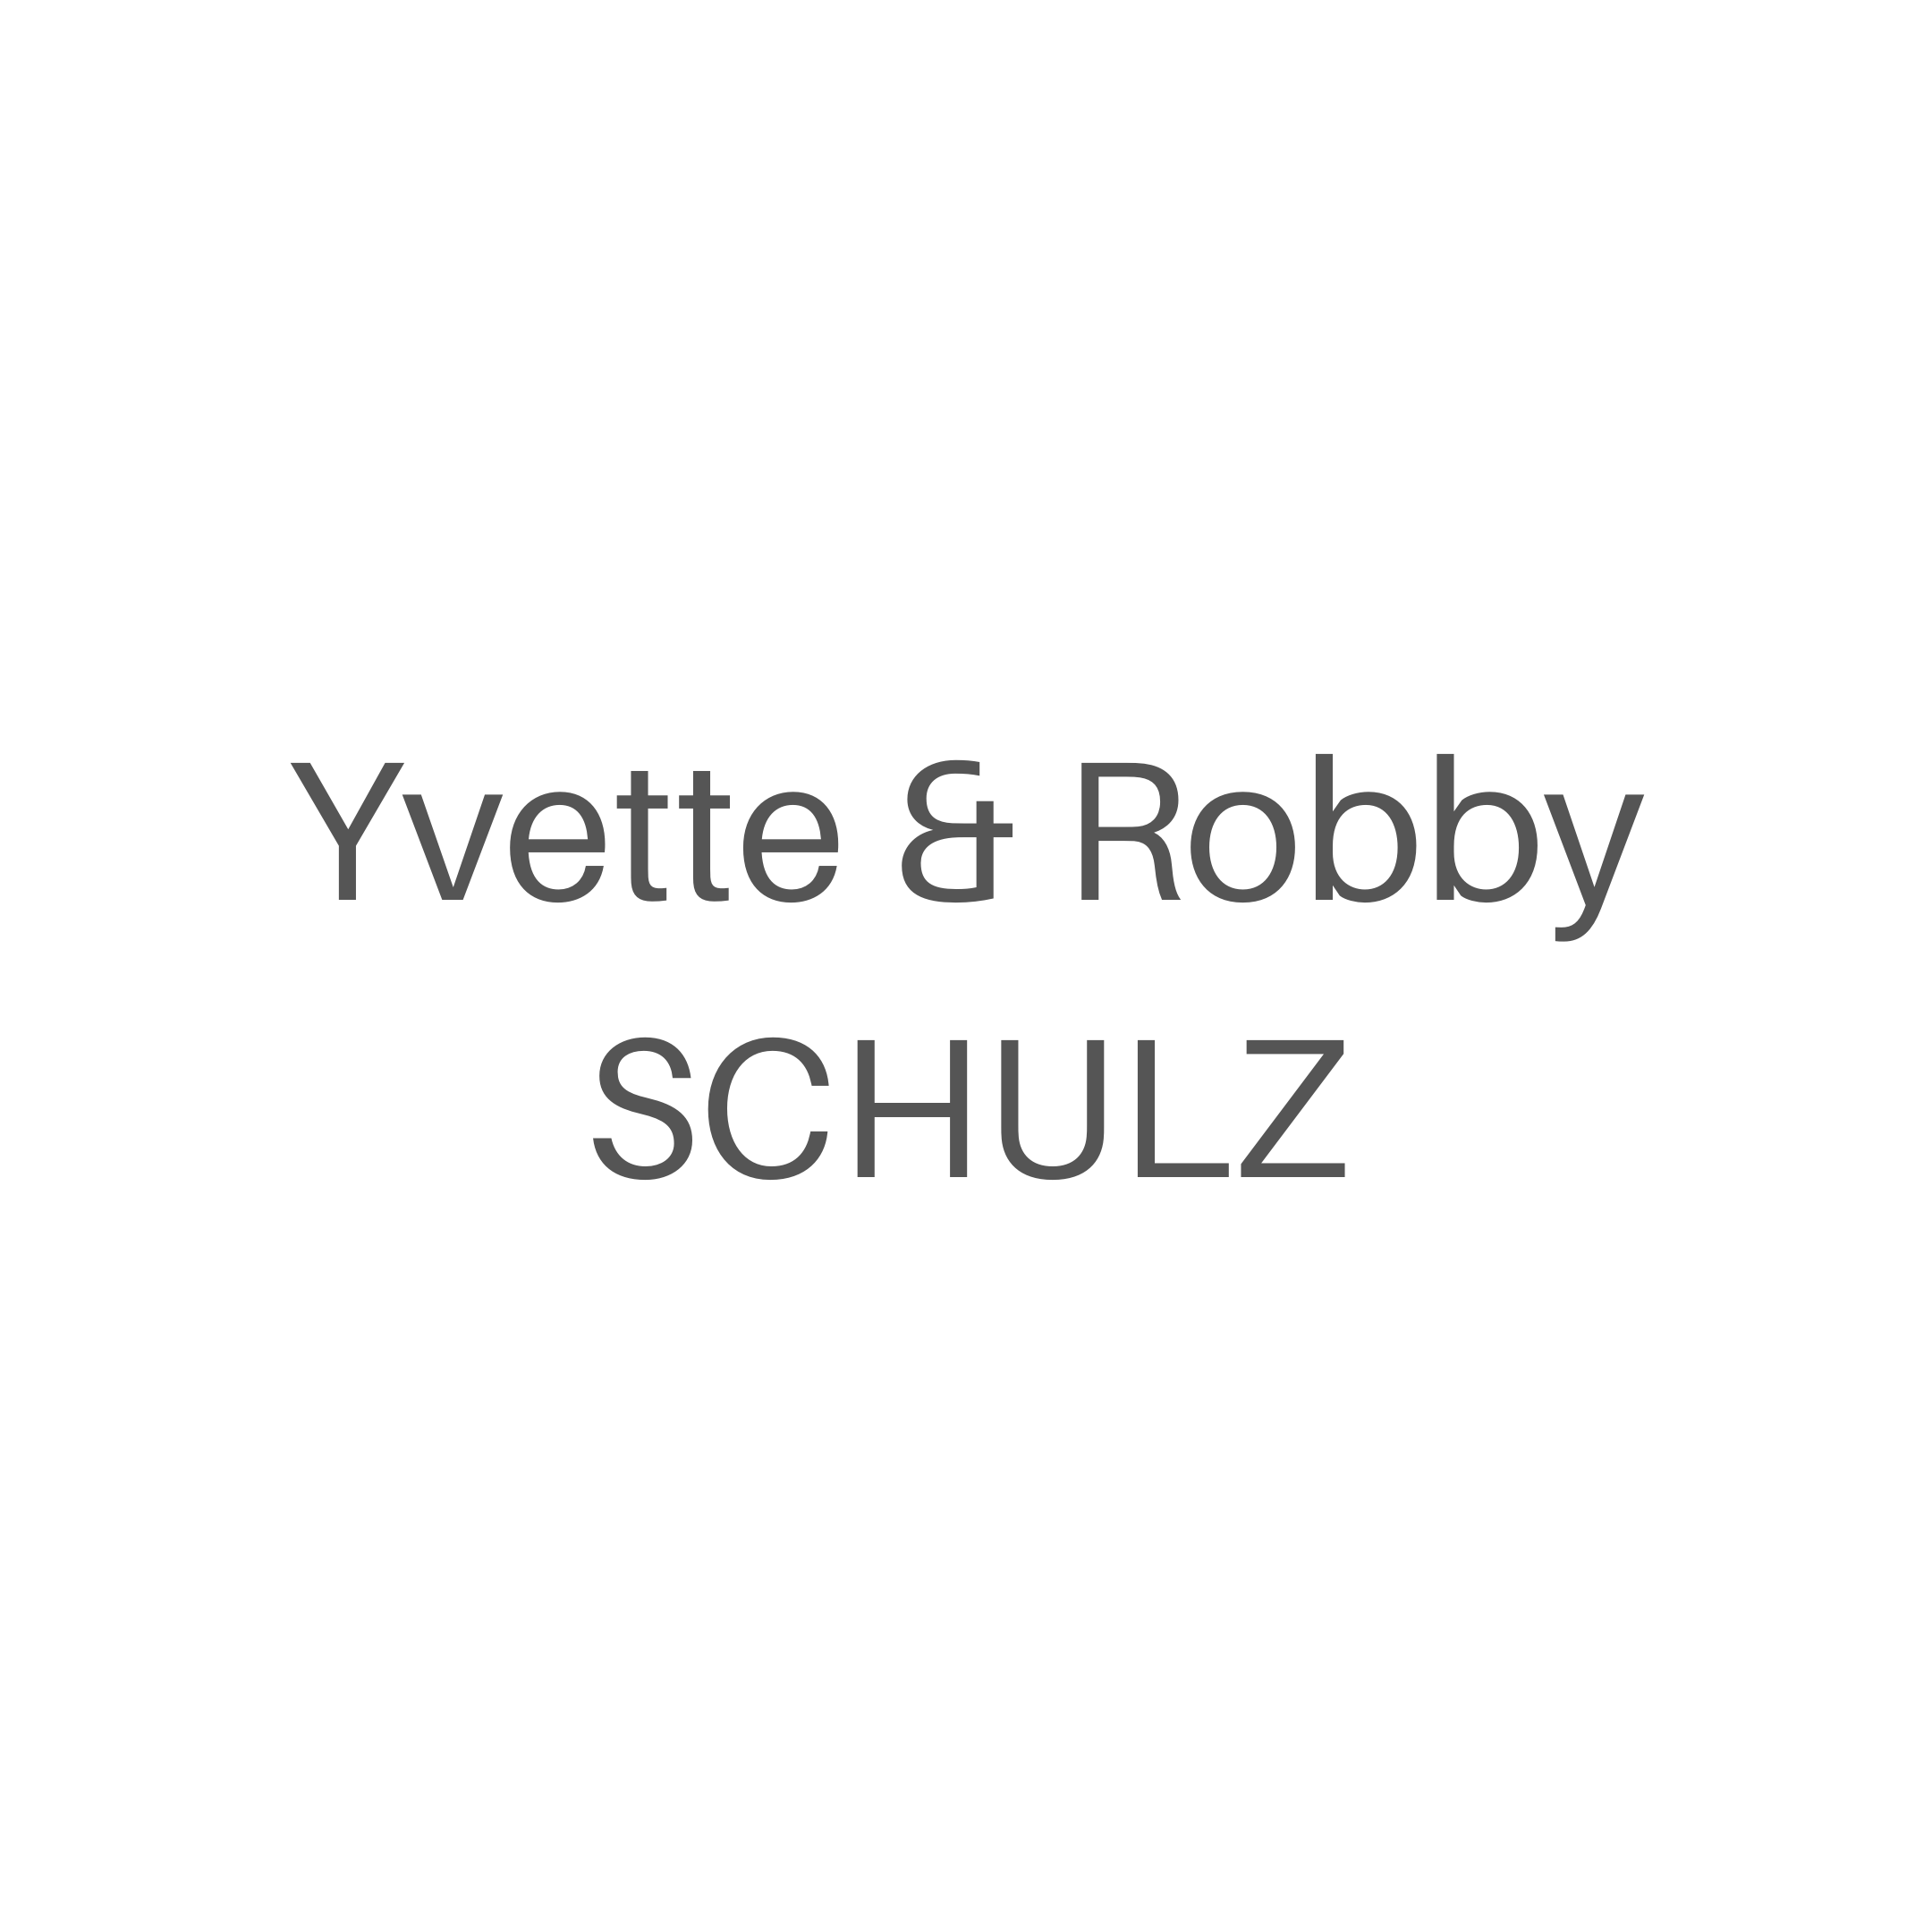 Yvette & Robby Schulz 